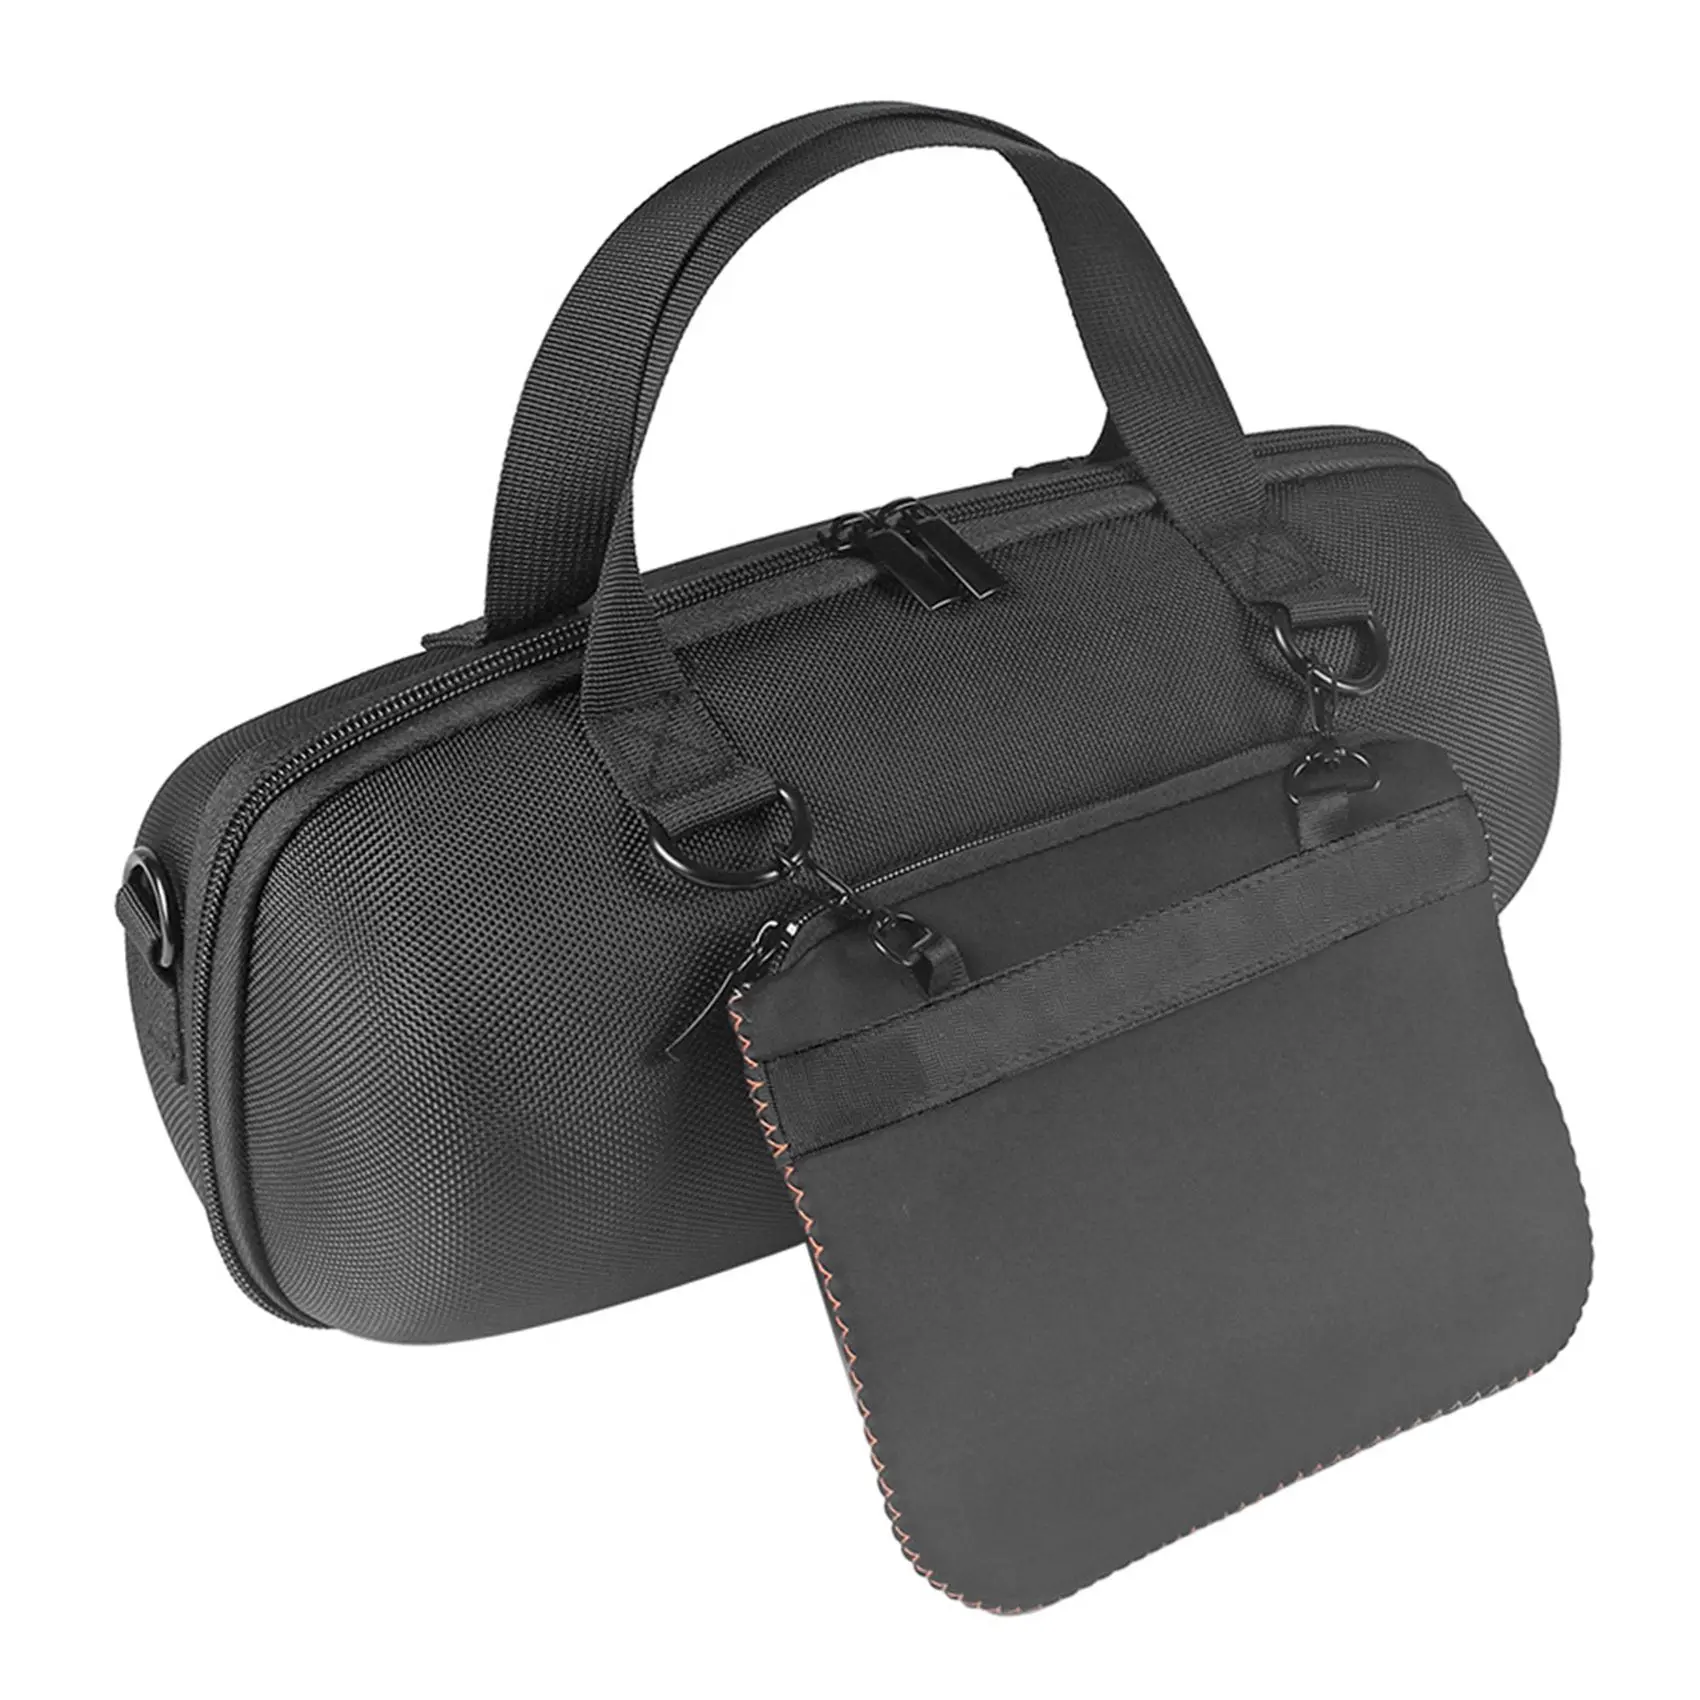 

Жесткий Чехол для Xtreme 3, Дорожный Чехол для хранения, защитный чехол, Портативная сумка (оранжевый)